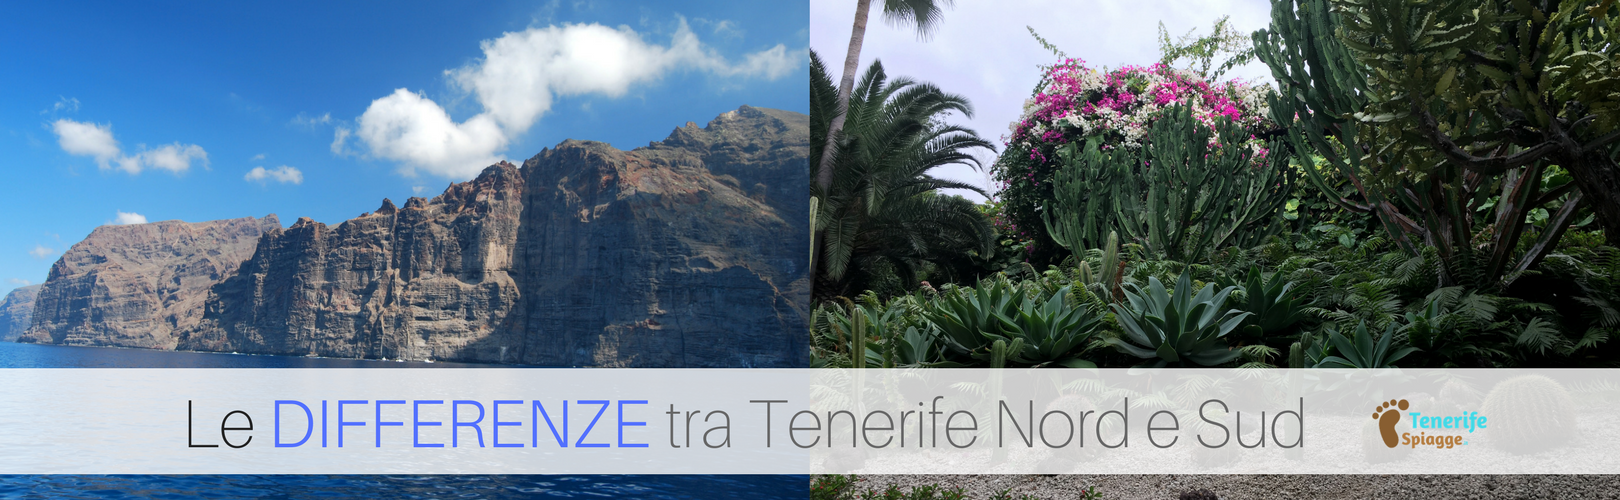 Tenerife Spiagge